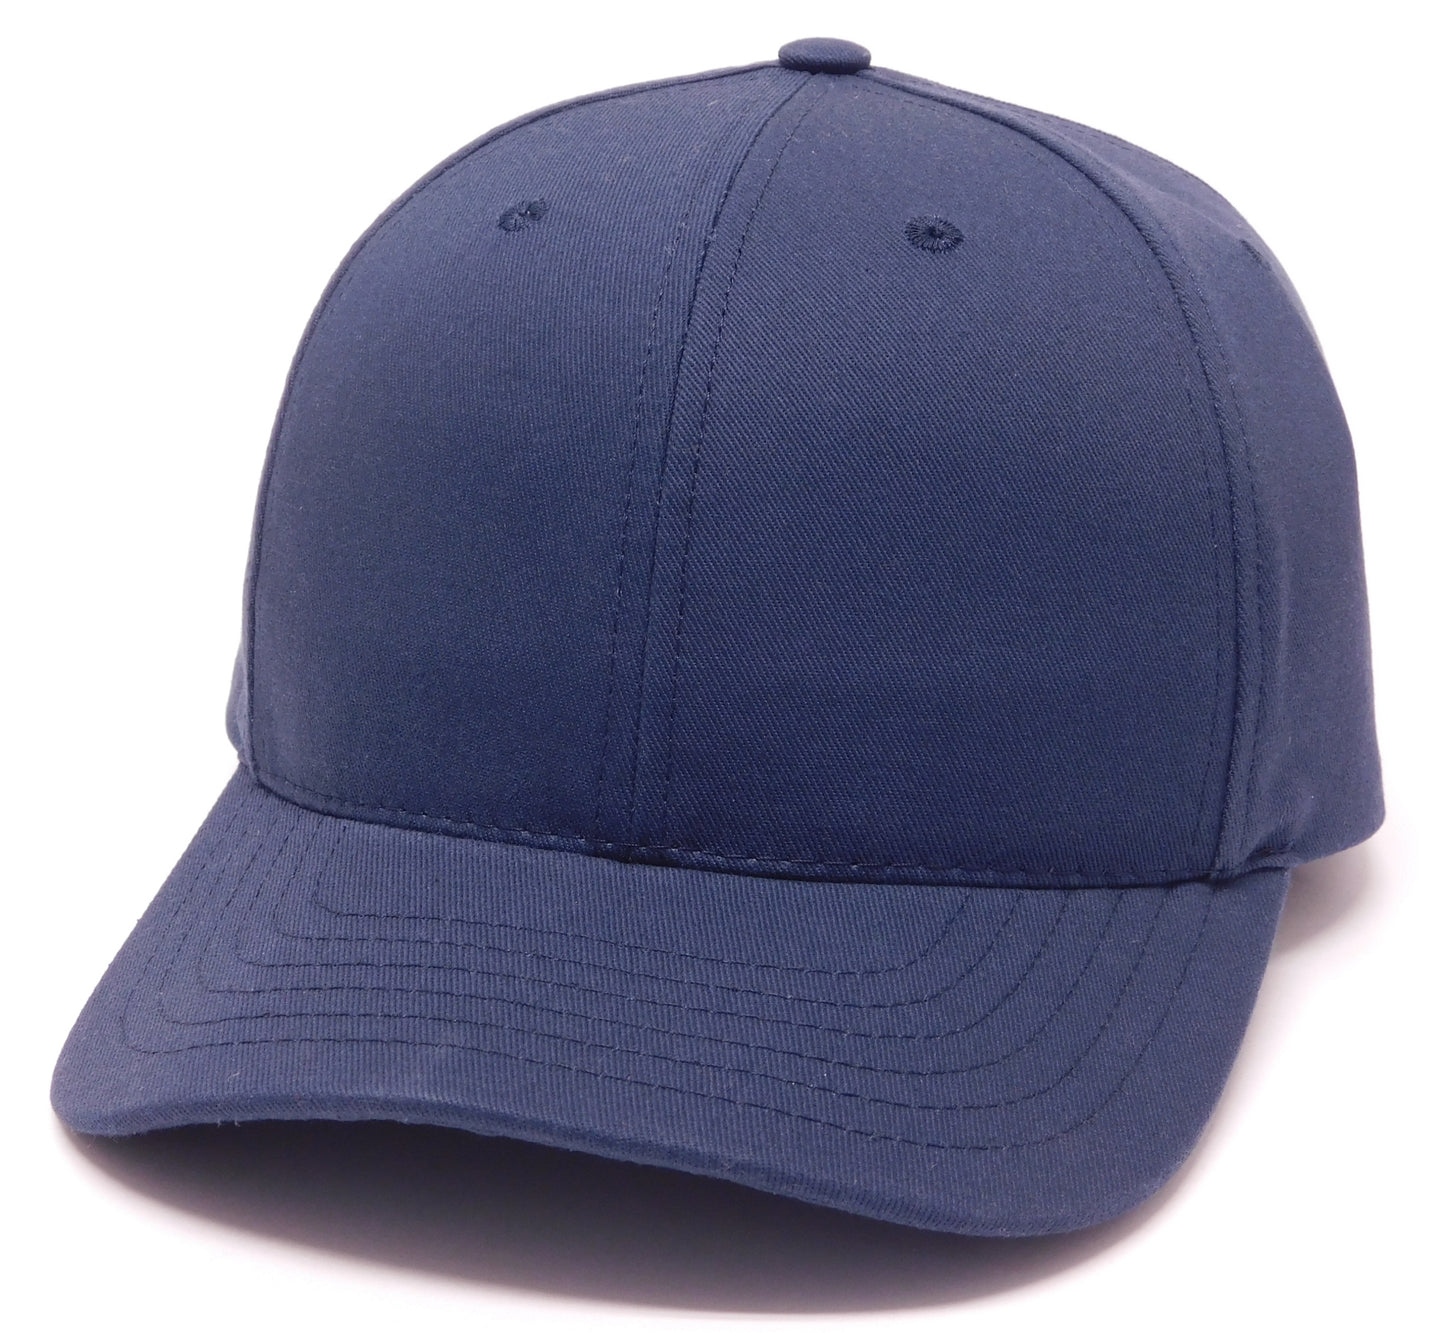 USA 600- Standard Twill Cap